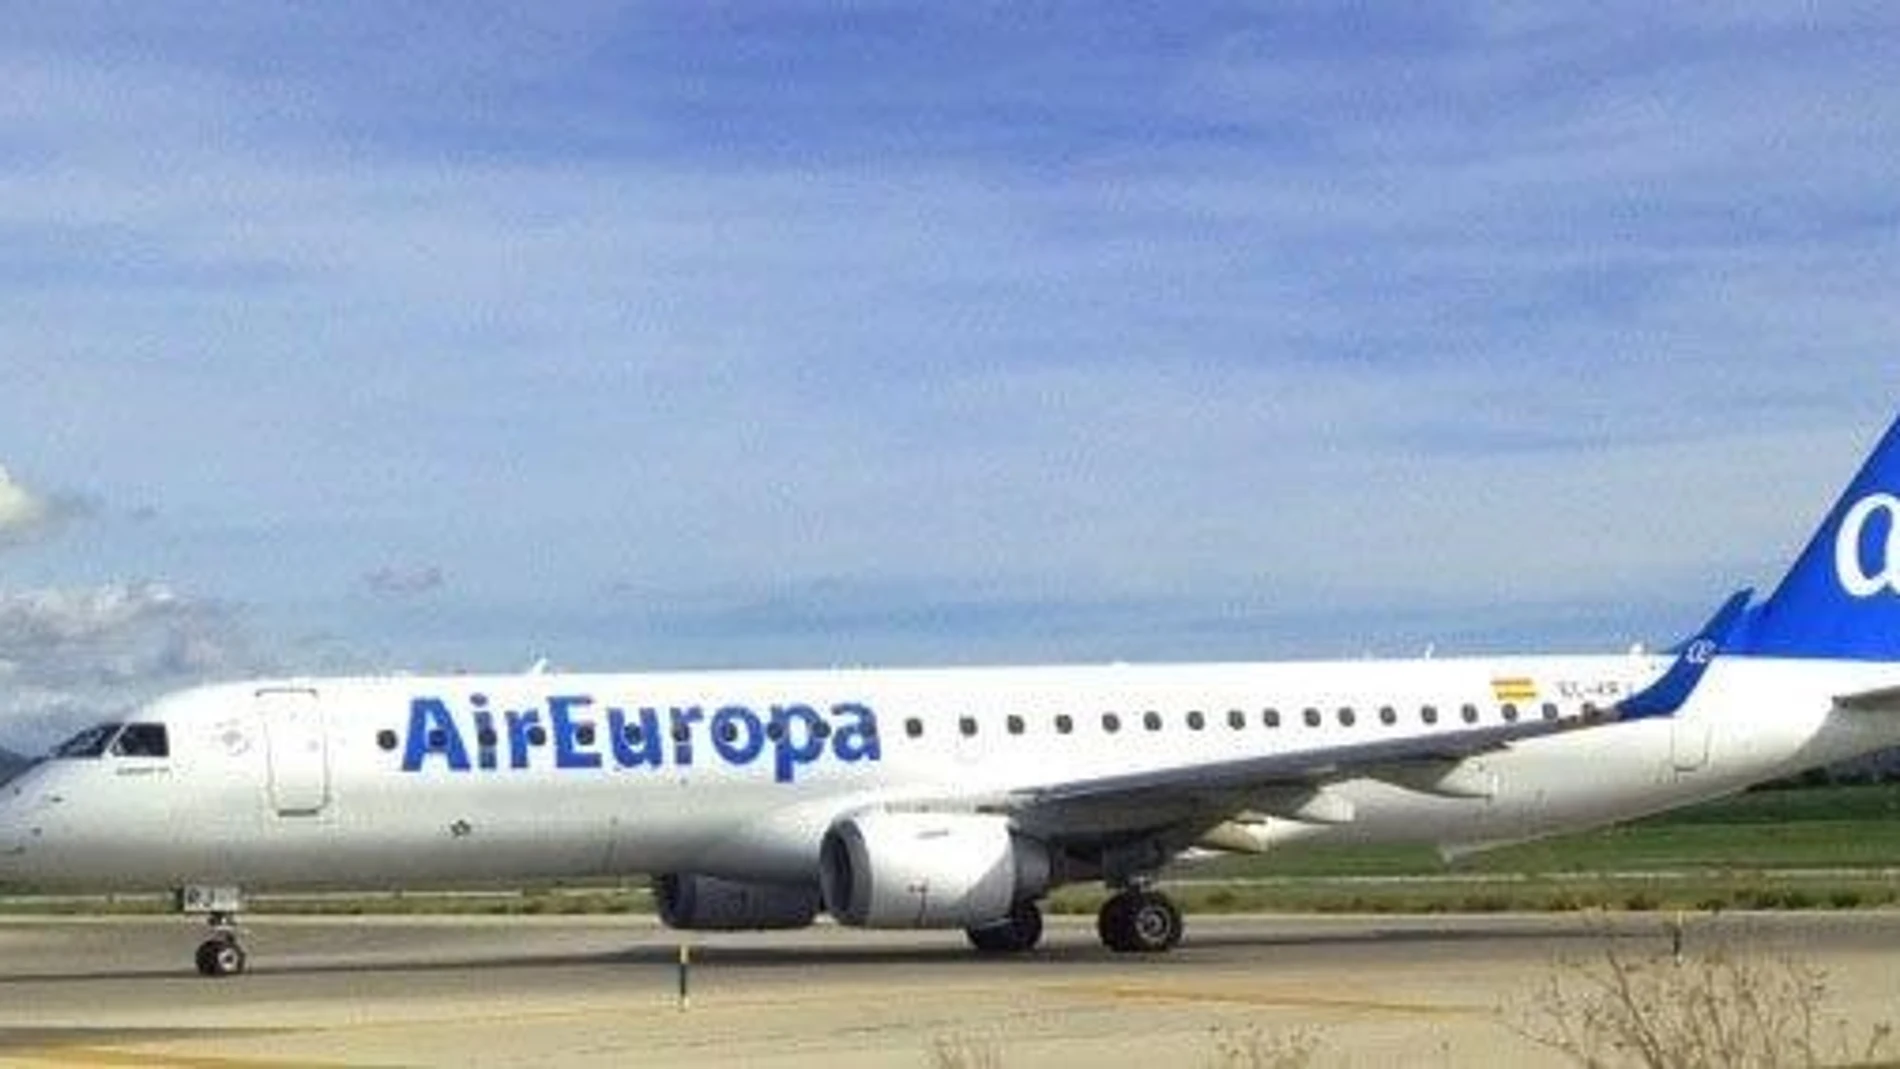 Economía/Empresas.- Los pilotos de Air Europa Express firman el primer convenio colectivo de la aerolínea